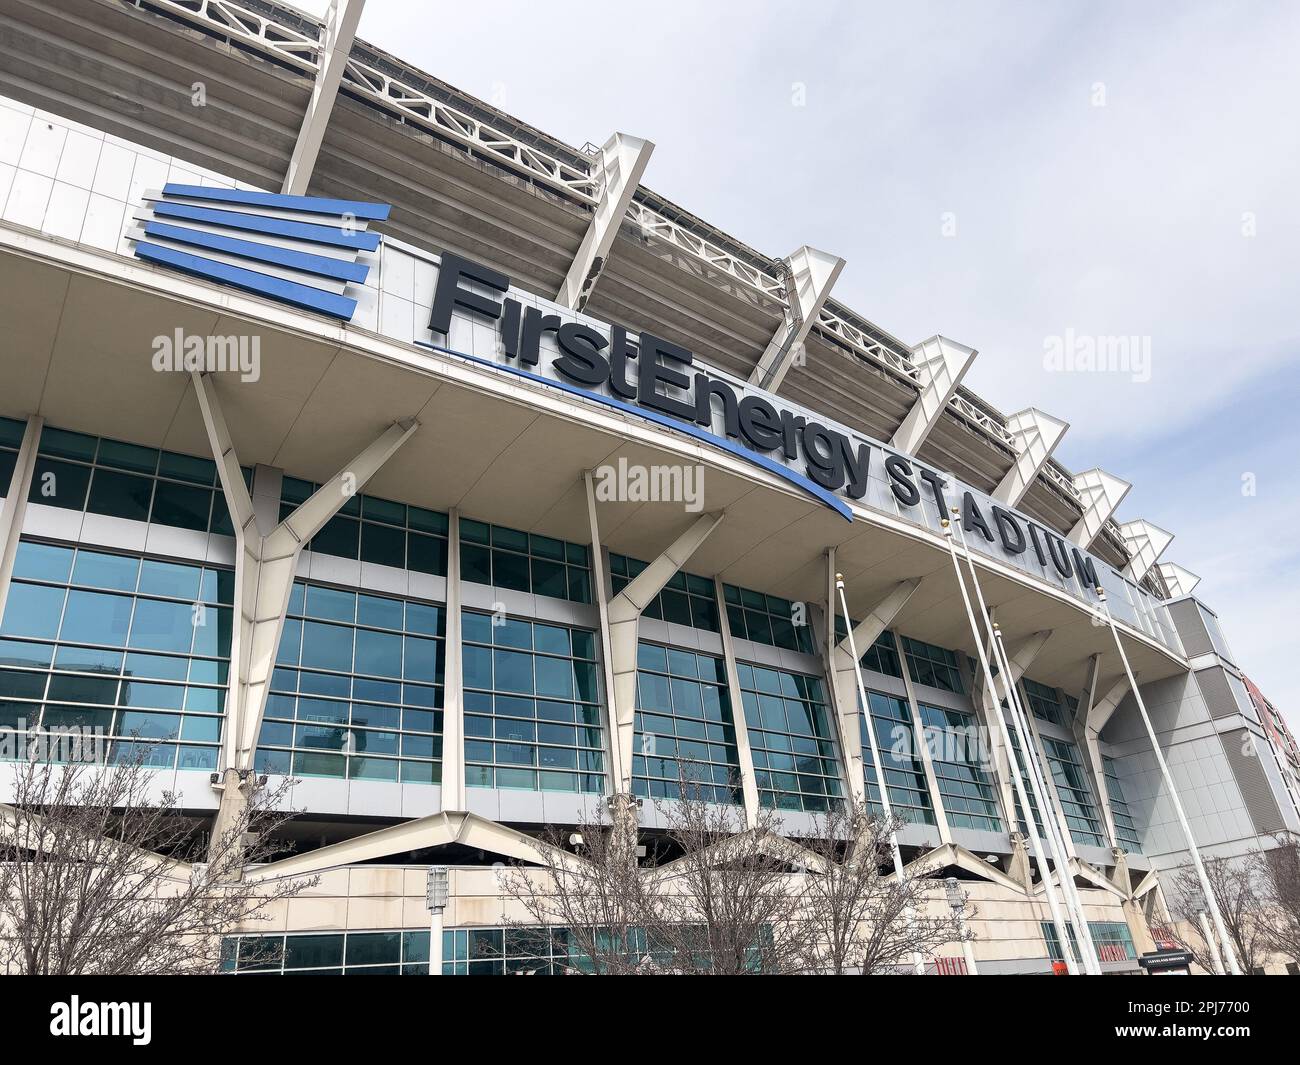 Le stade FirstEnergy accueille les Cleveland Browns de la NFL, ainsi que d'autres événements sportifs et de divertissement. Banque D'Images